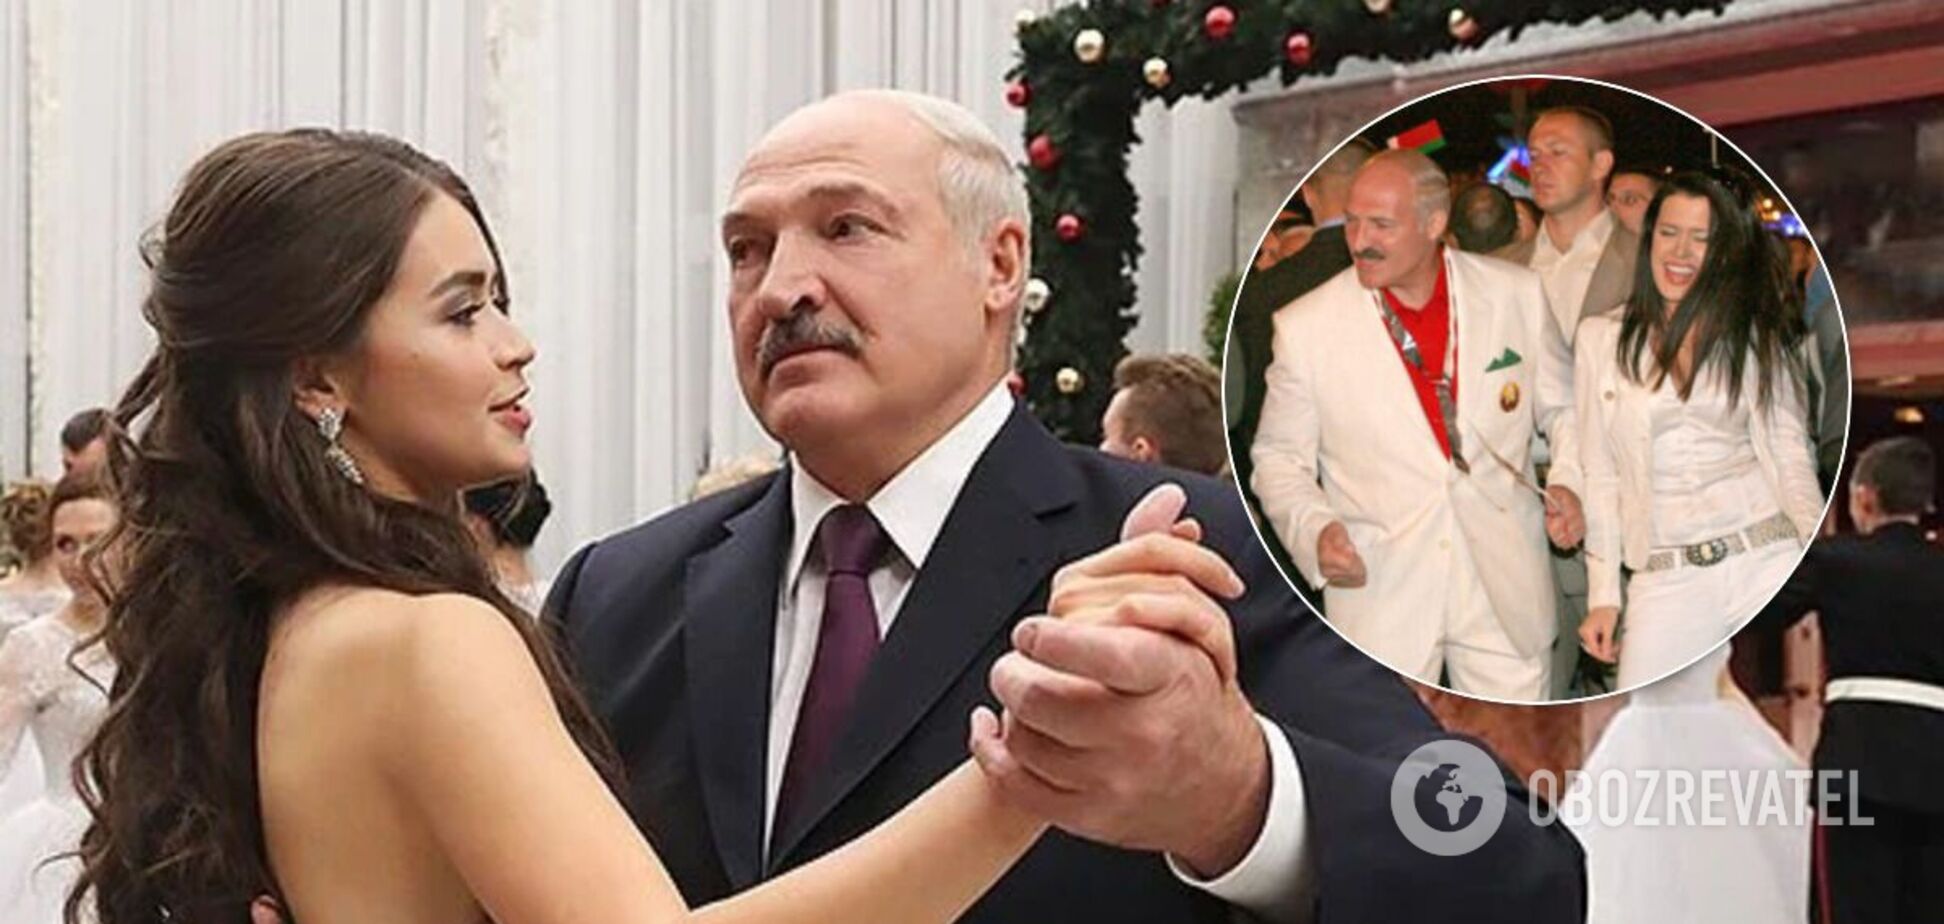 Дружина і коханки Лукашенка: які таємниці приховує особисте життя білоруського 'диктатора'